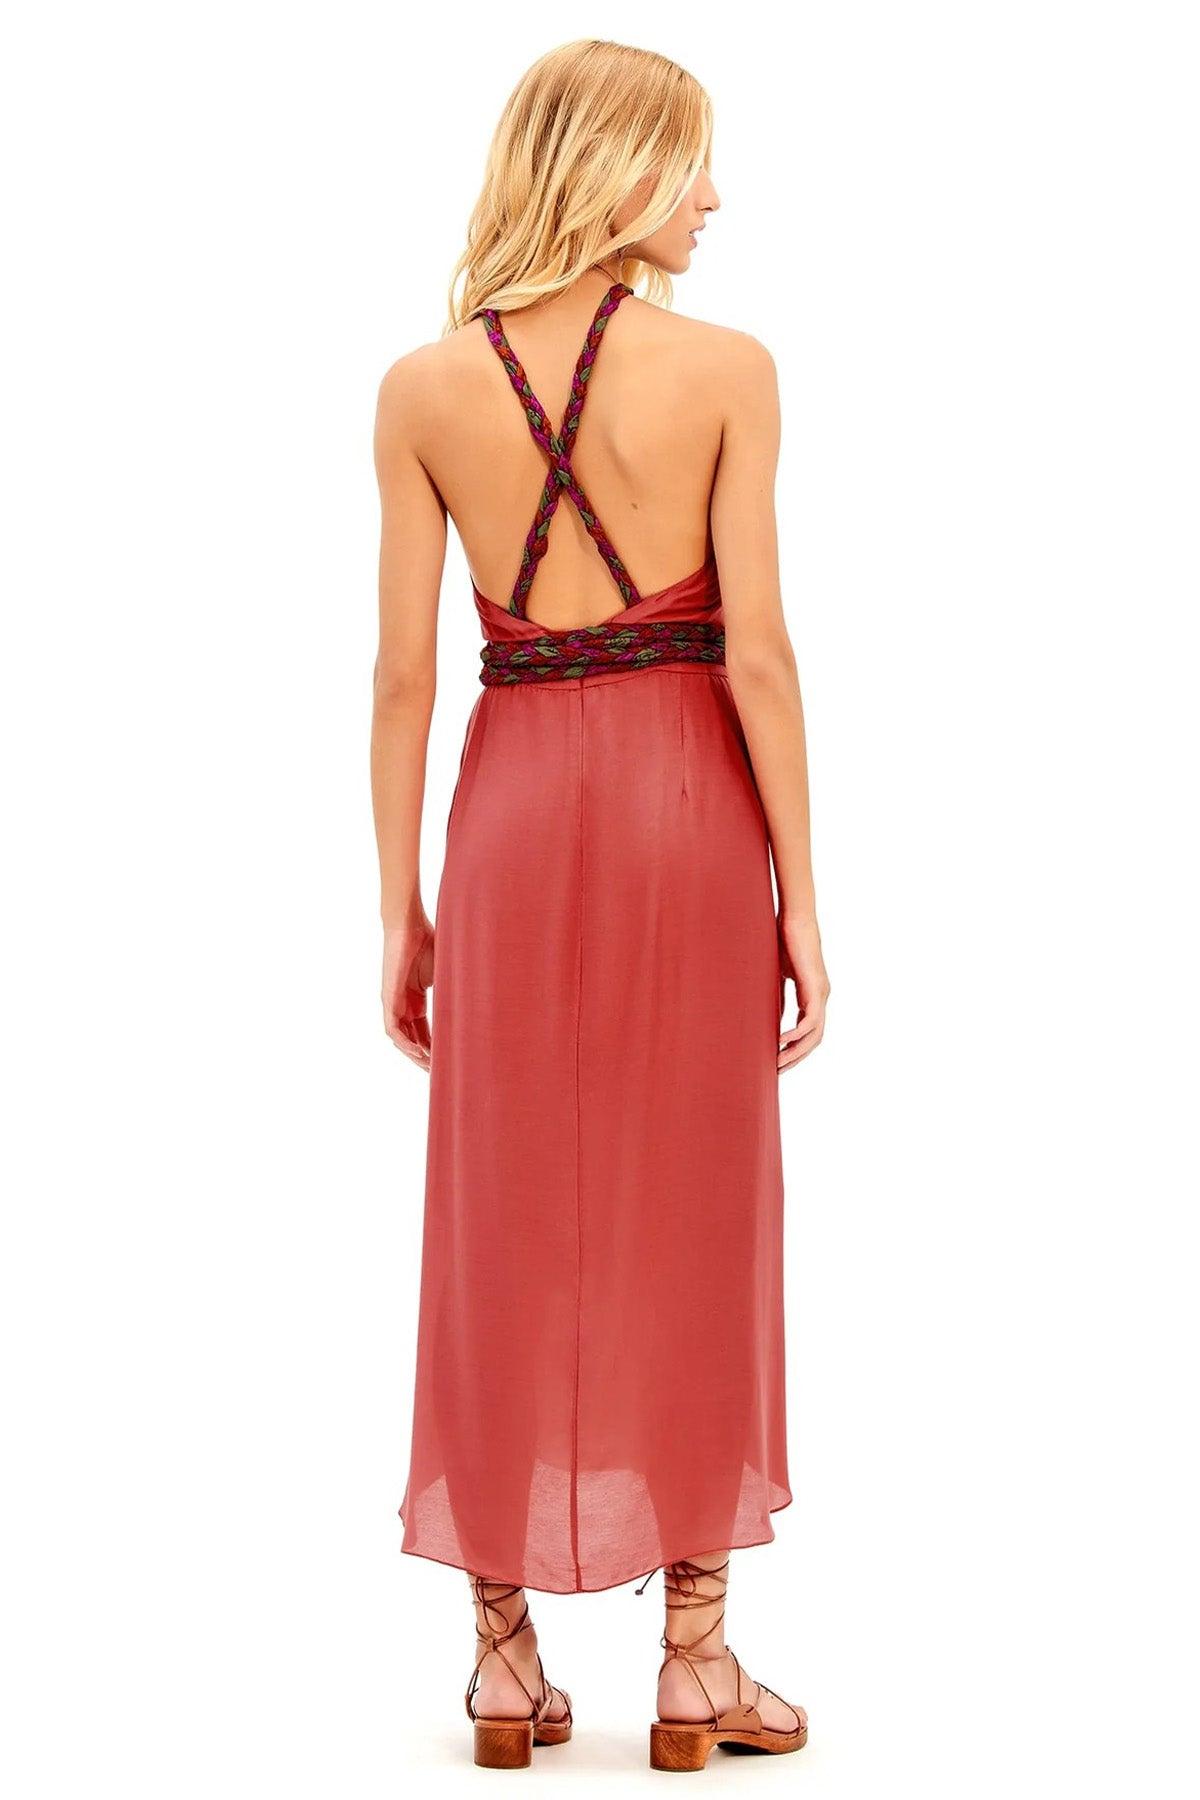 Vix Cris Çapraz Boyundan Bağlamalı İpekli Midi Elbise-Libas Trendy Fashion Store